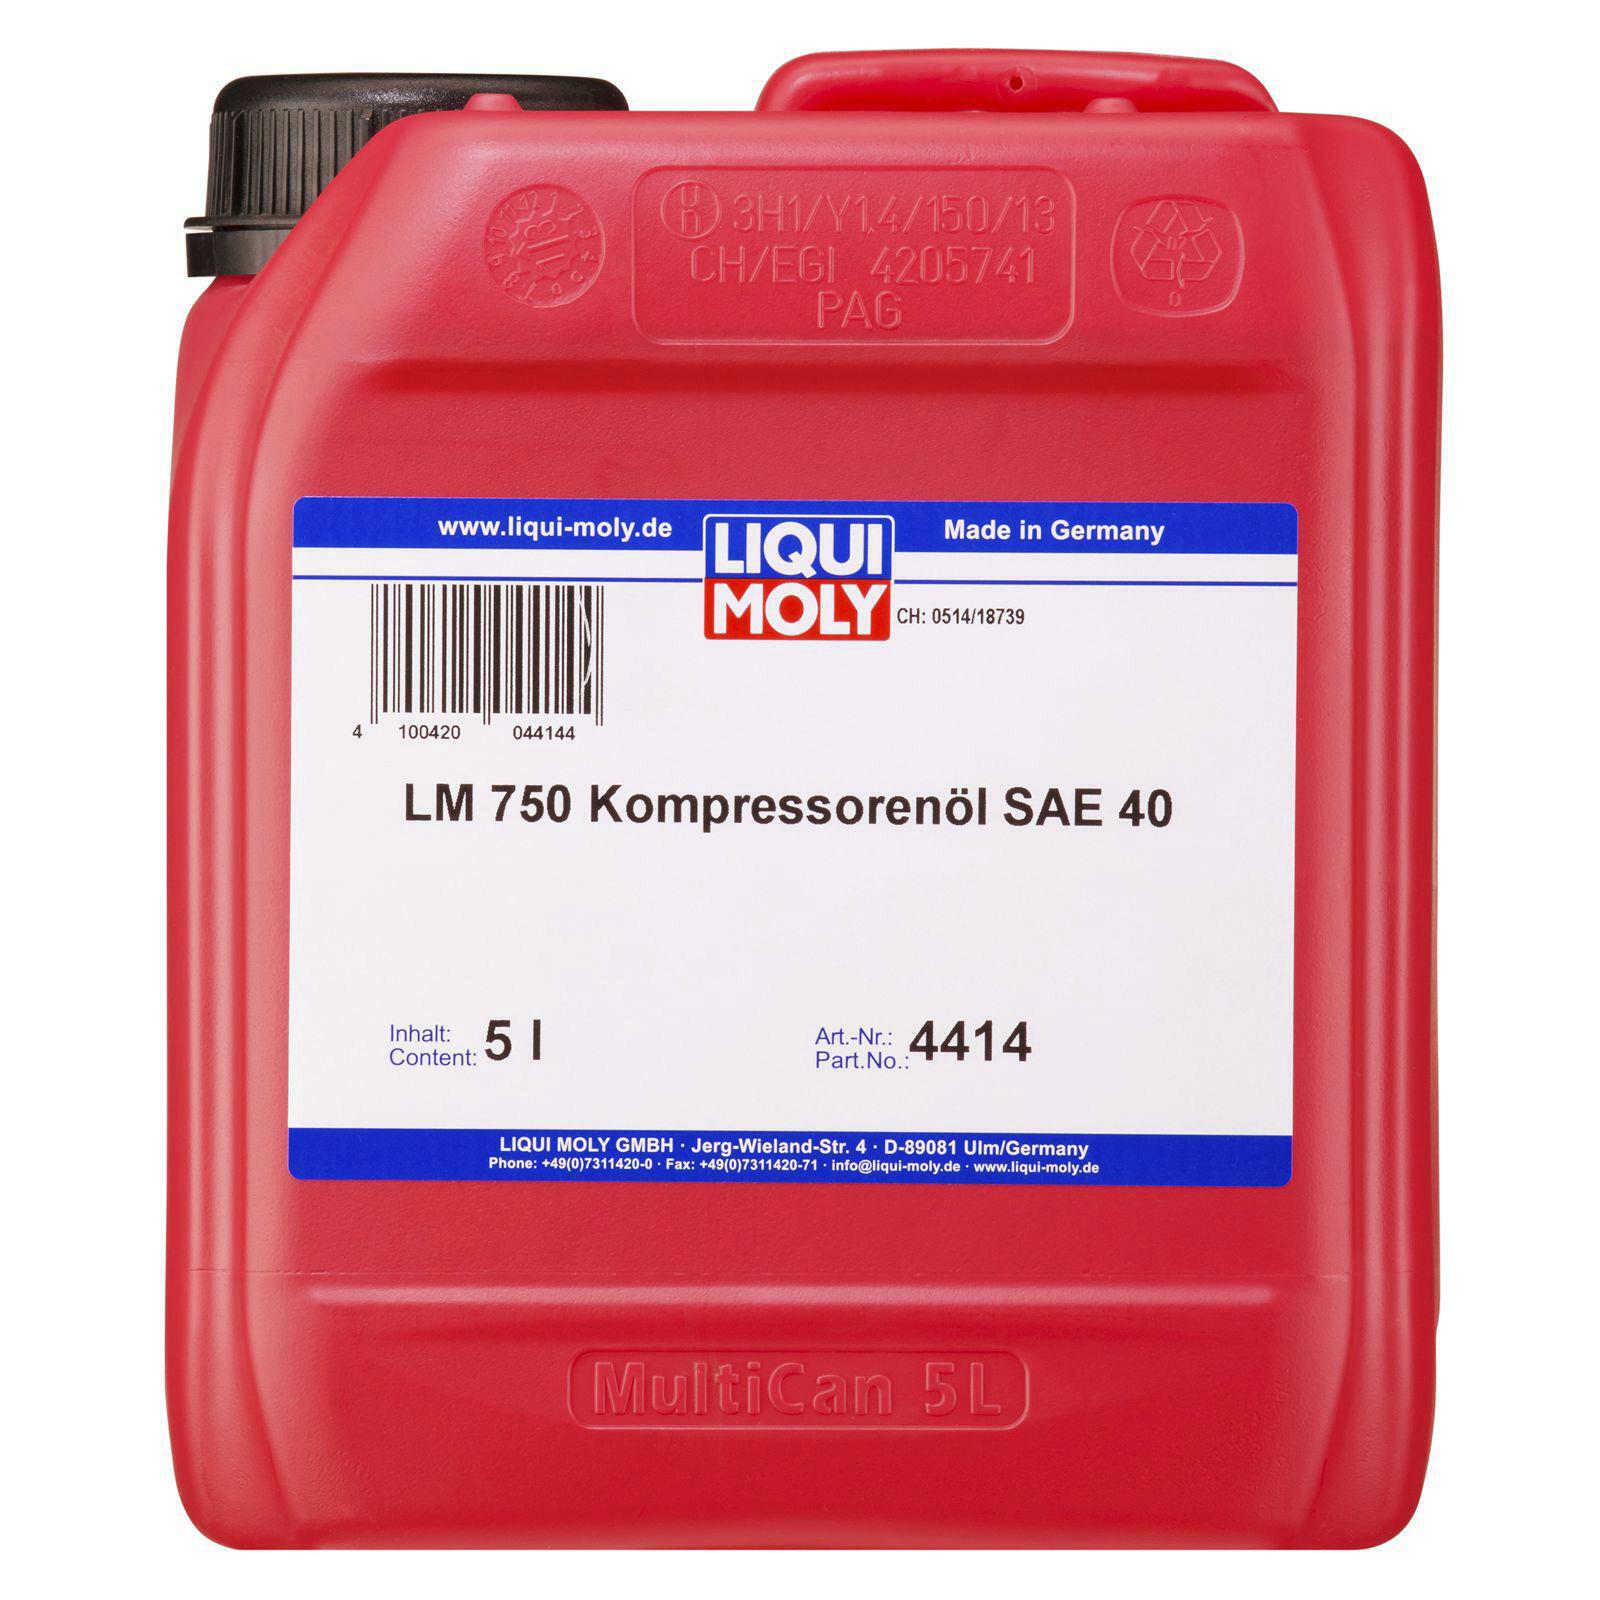 Liqui Moly 750 Kompressorenöl SAE 40 5l